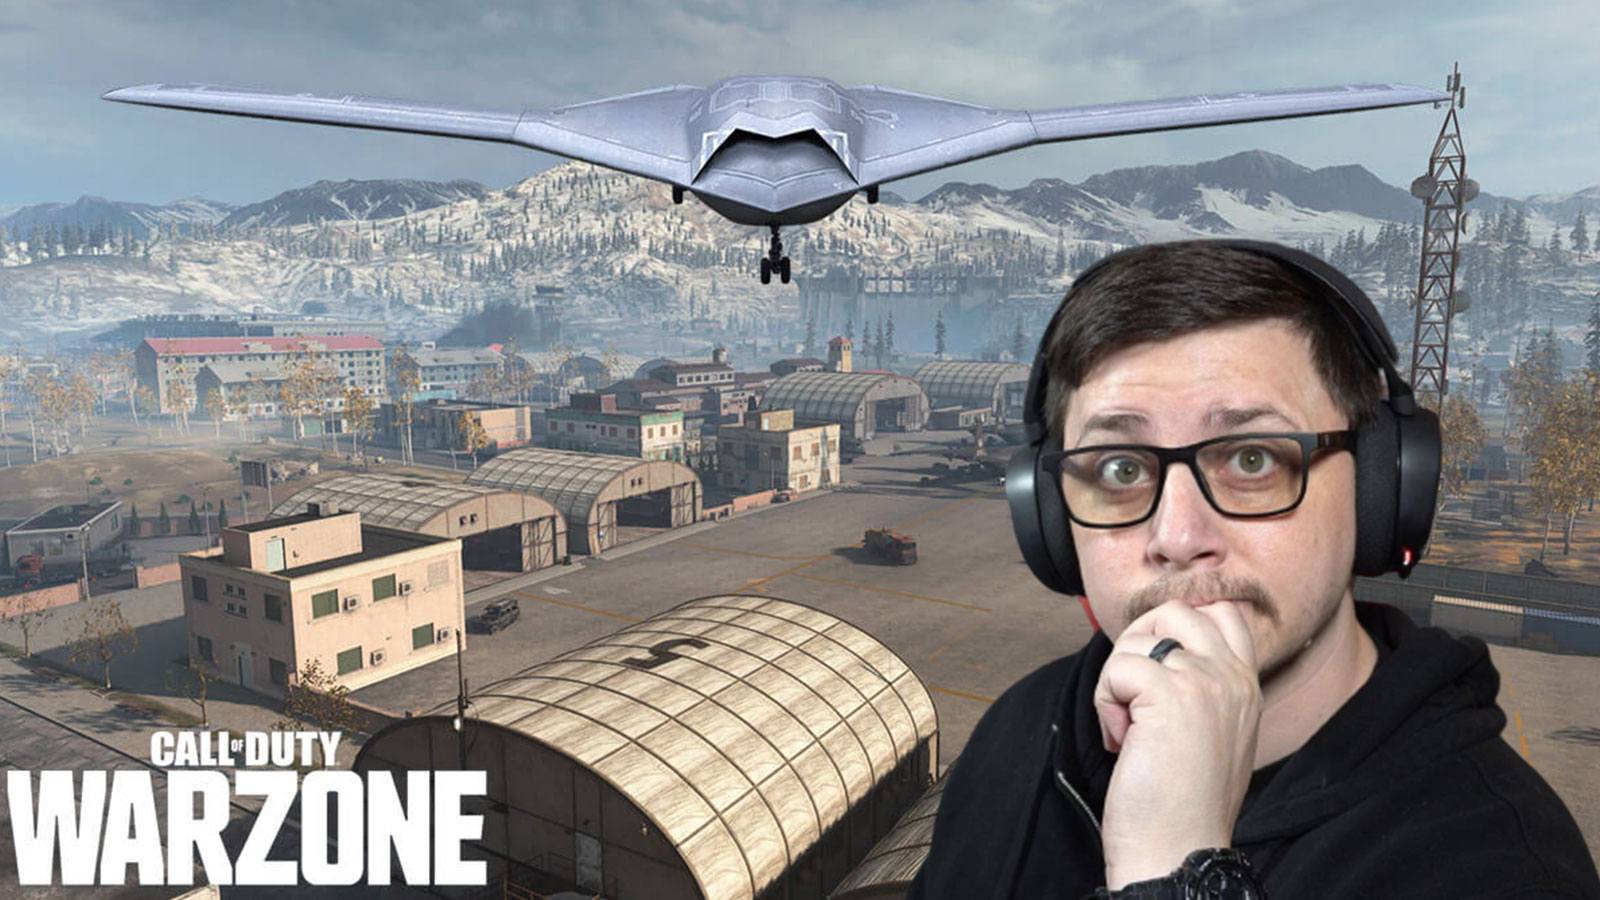 Drone Warzone JGOD